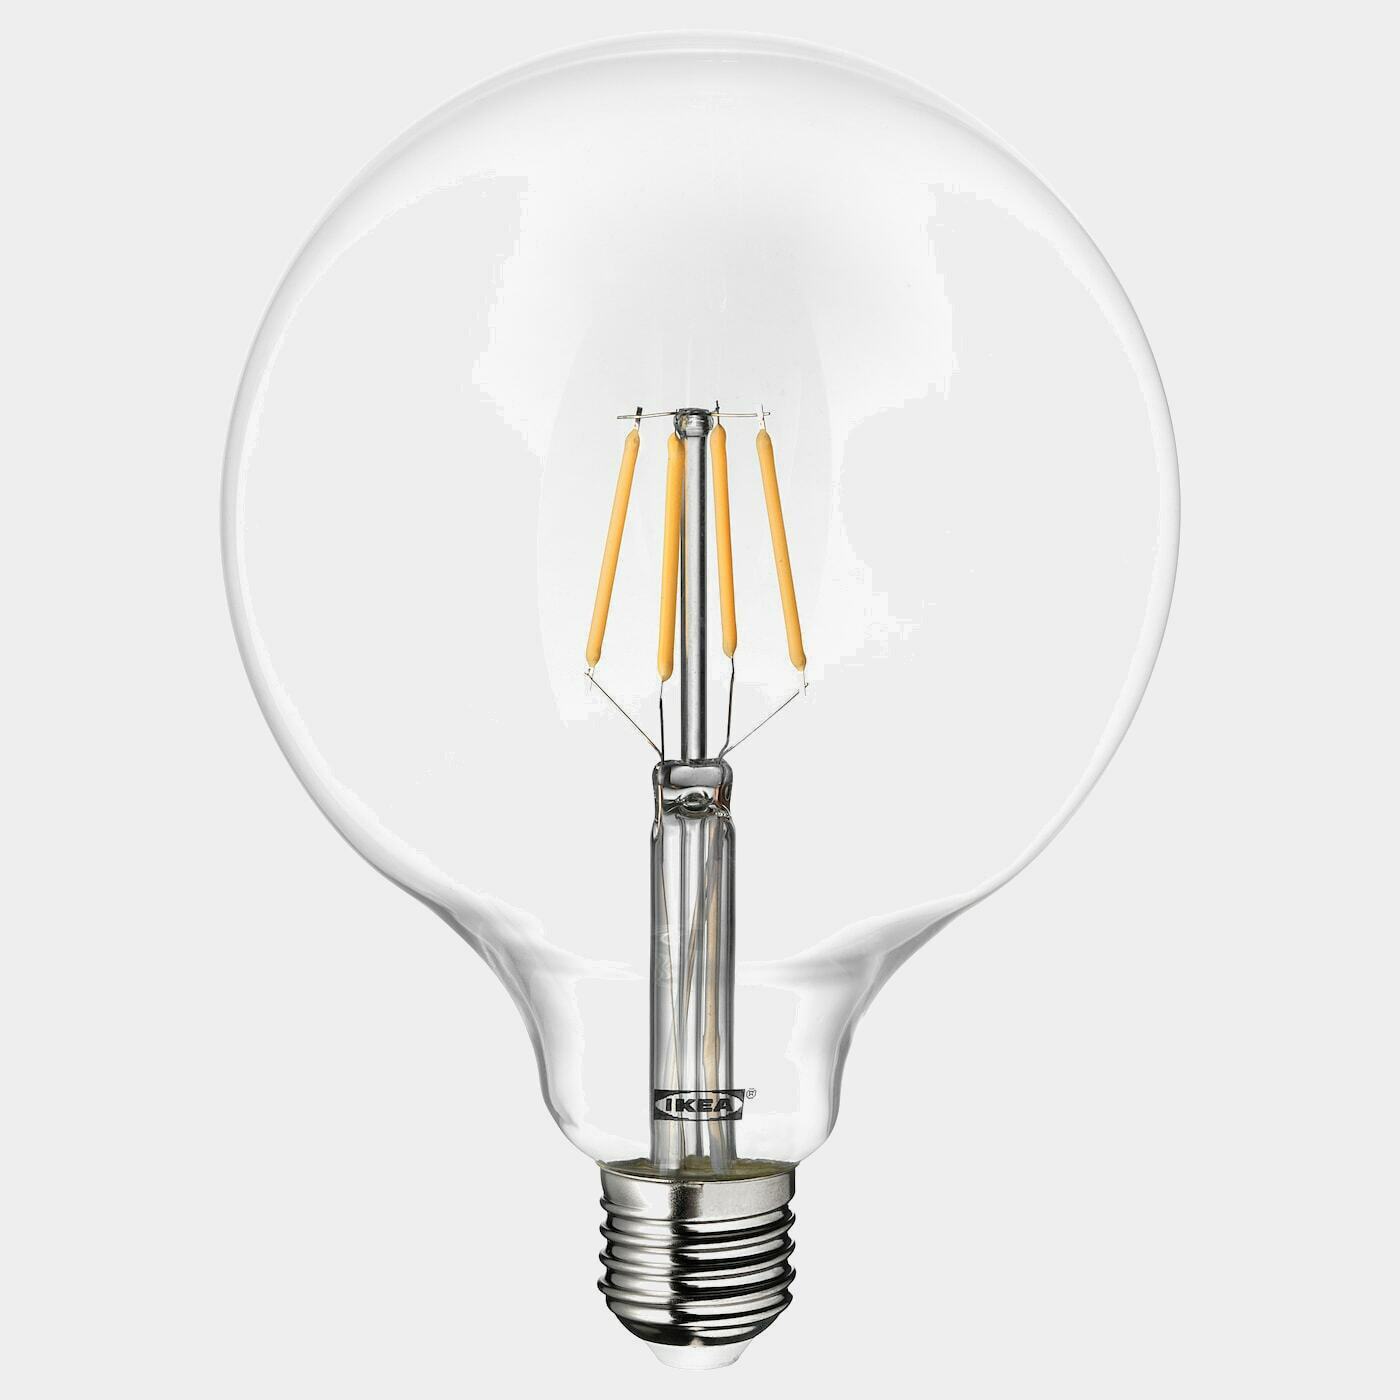 LUNNOM LED-Leuchtmittel E27 600 lm  -  - Beleuchtung Ideen für dein Zuhause von Home Trends. Beleuchtung Trends von Social Media Influencer für dein Skandi Zuhause.